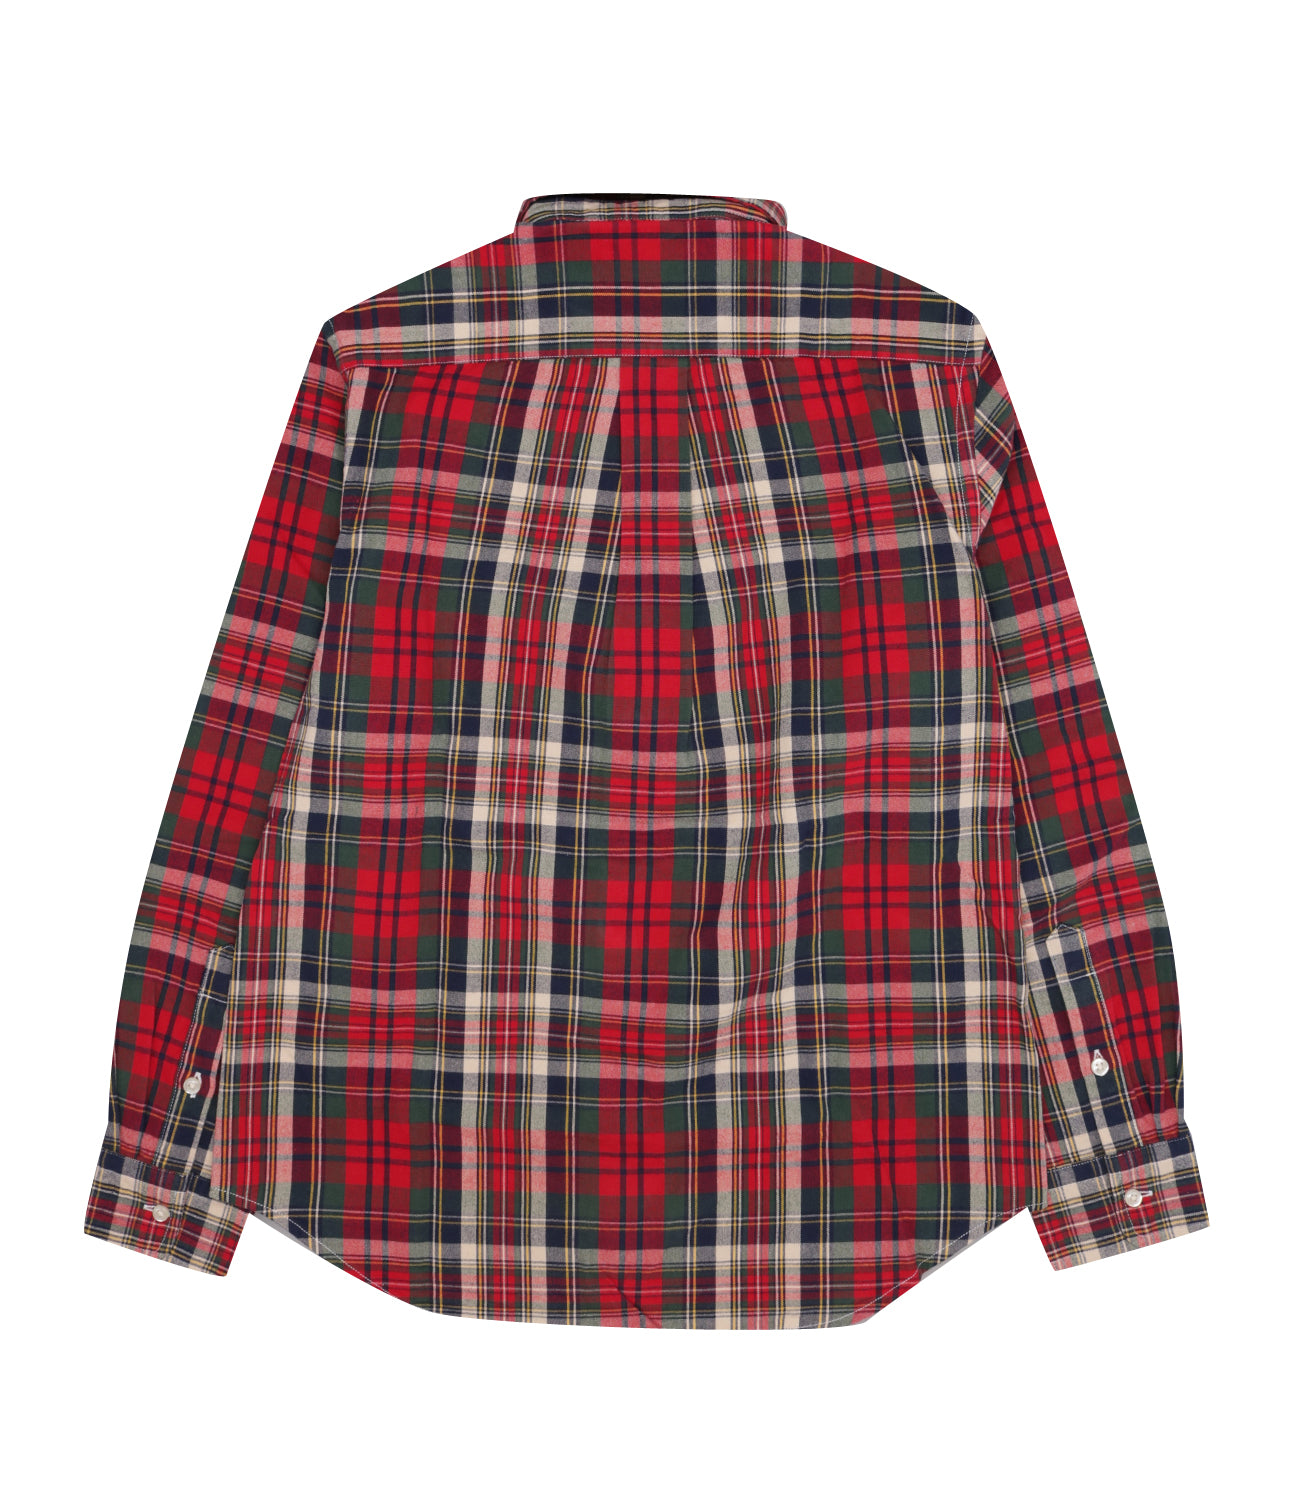 Ralph Lauren Childrenswear | Red and Green Shirt